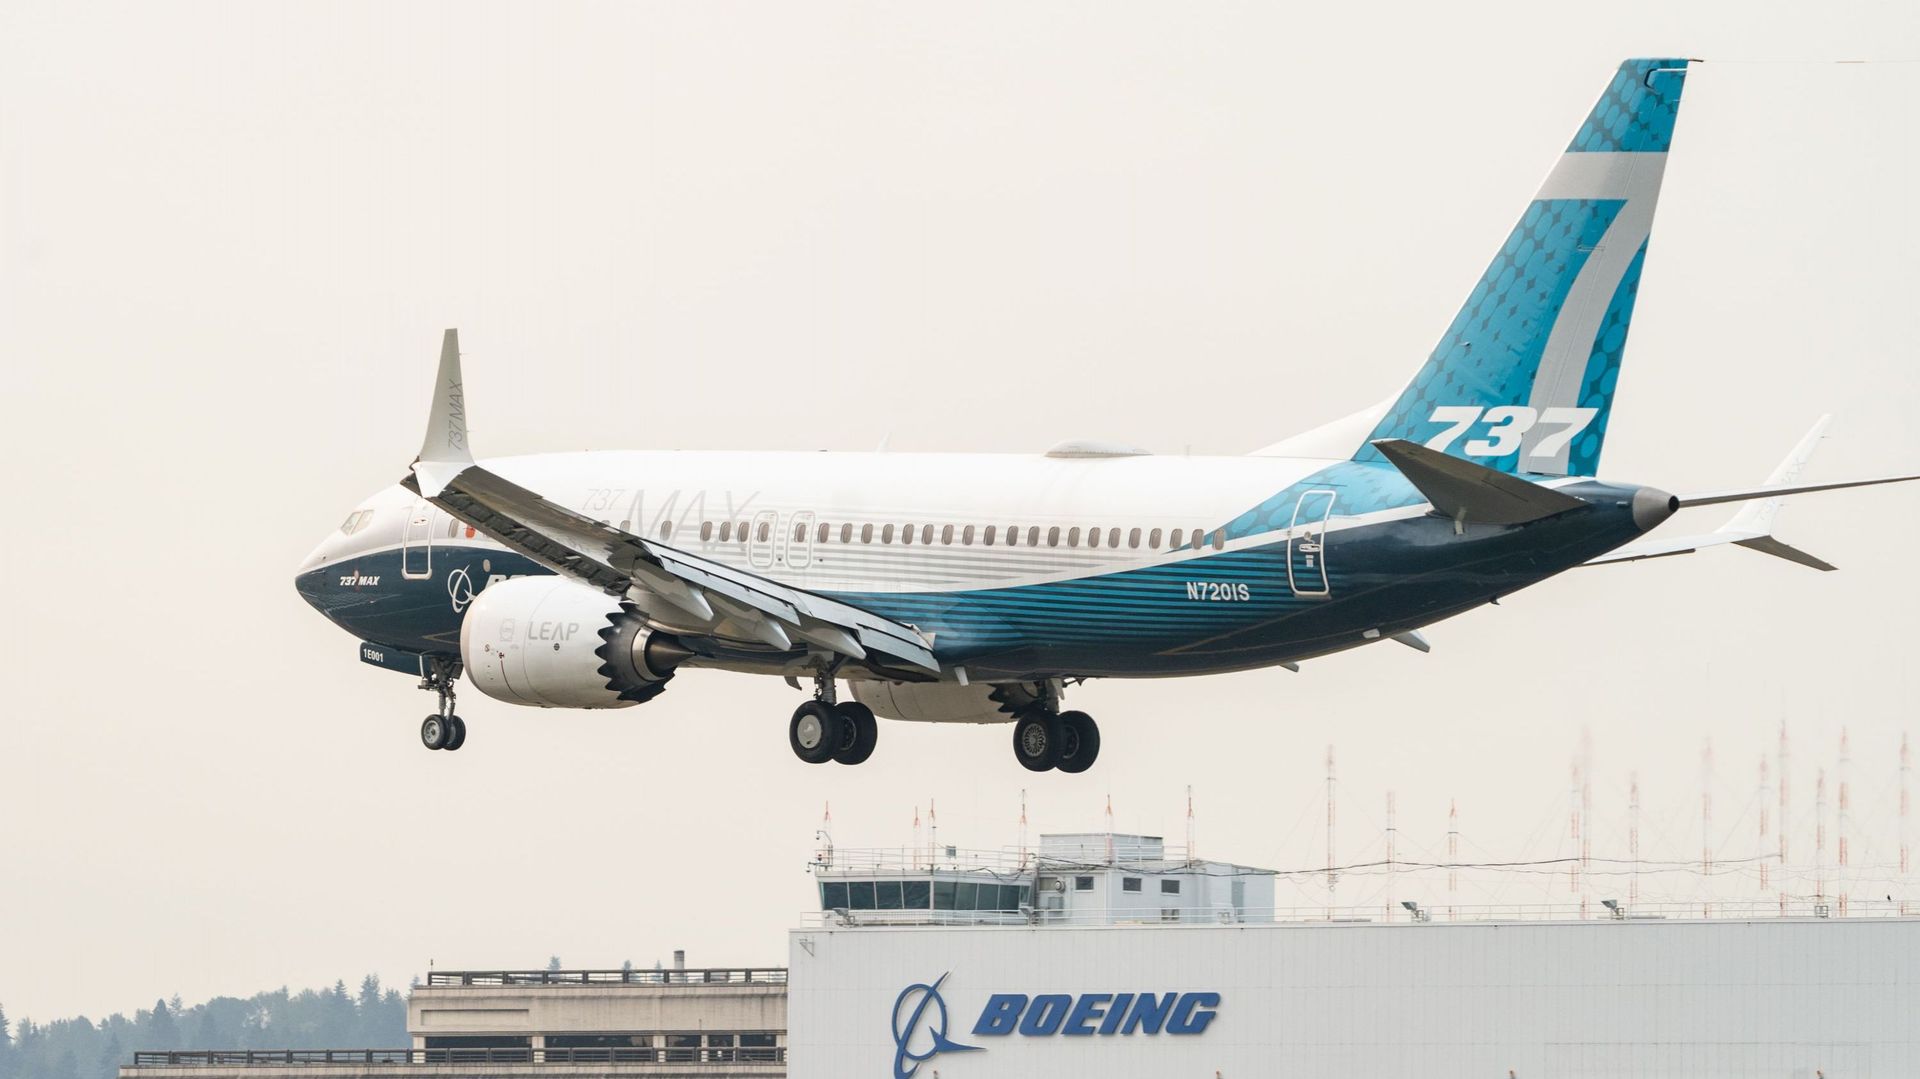 Le Boeing 737 Max bientôt de retour dans le ciel ?